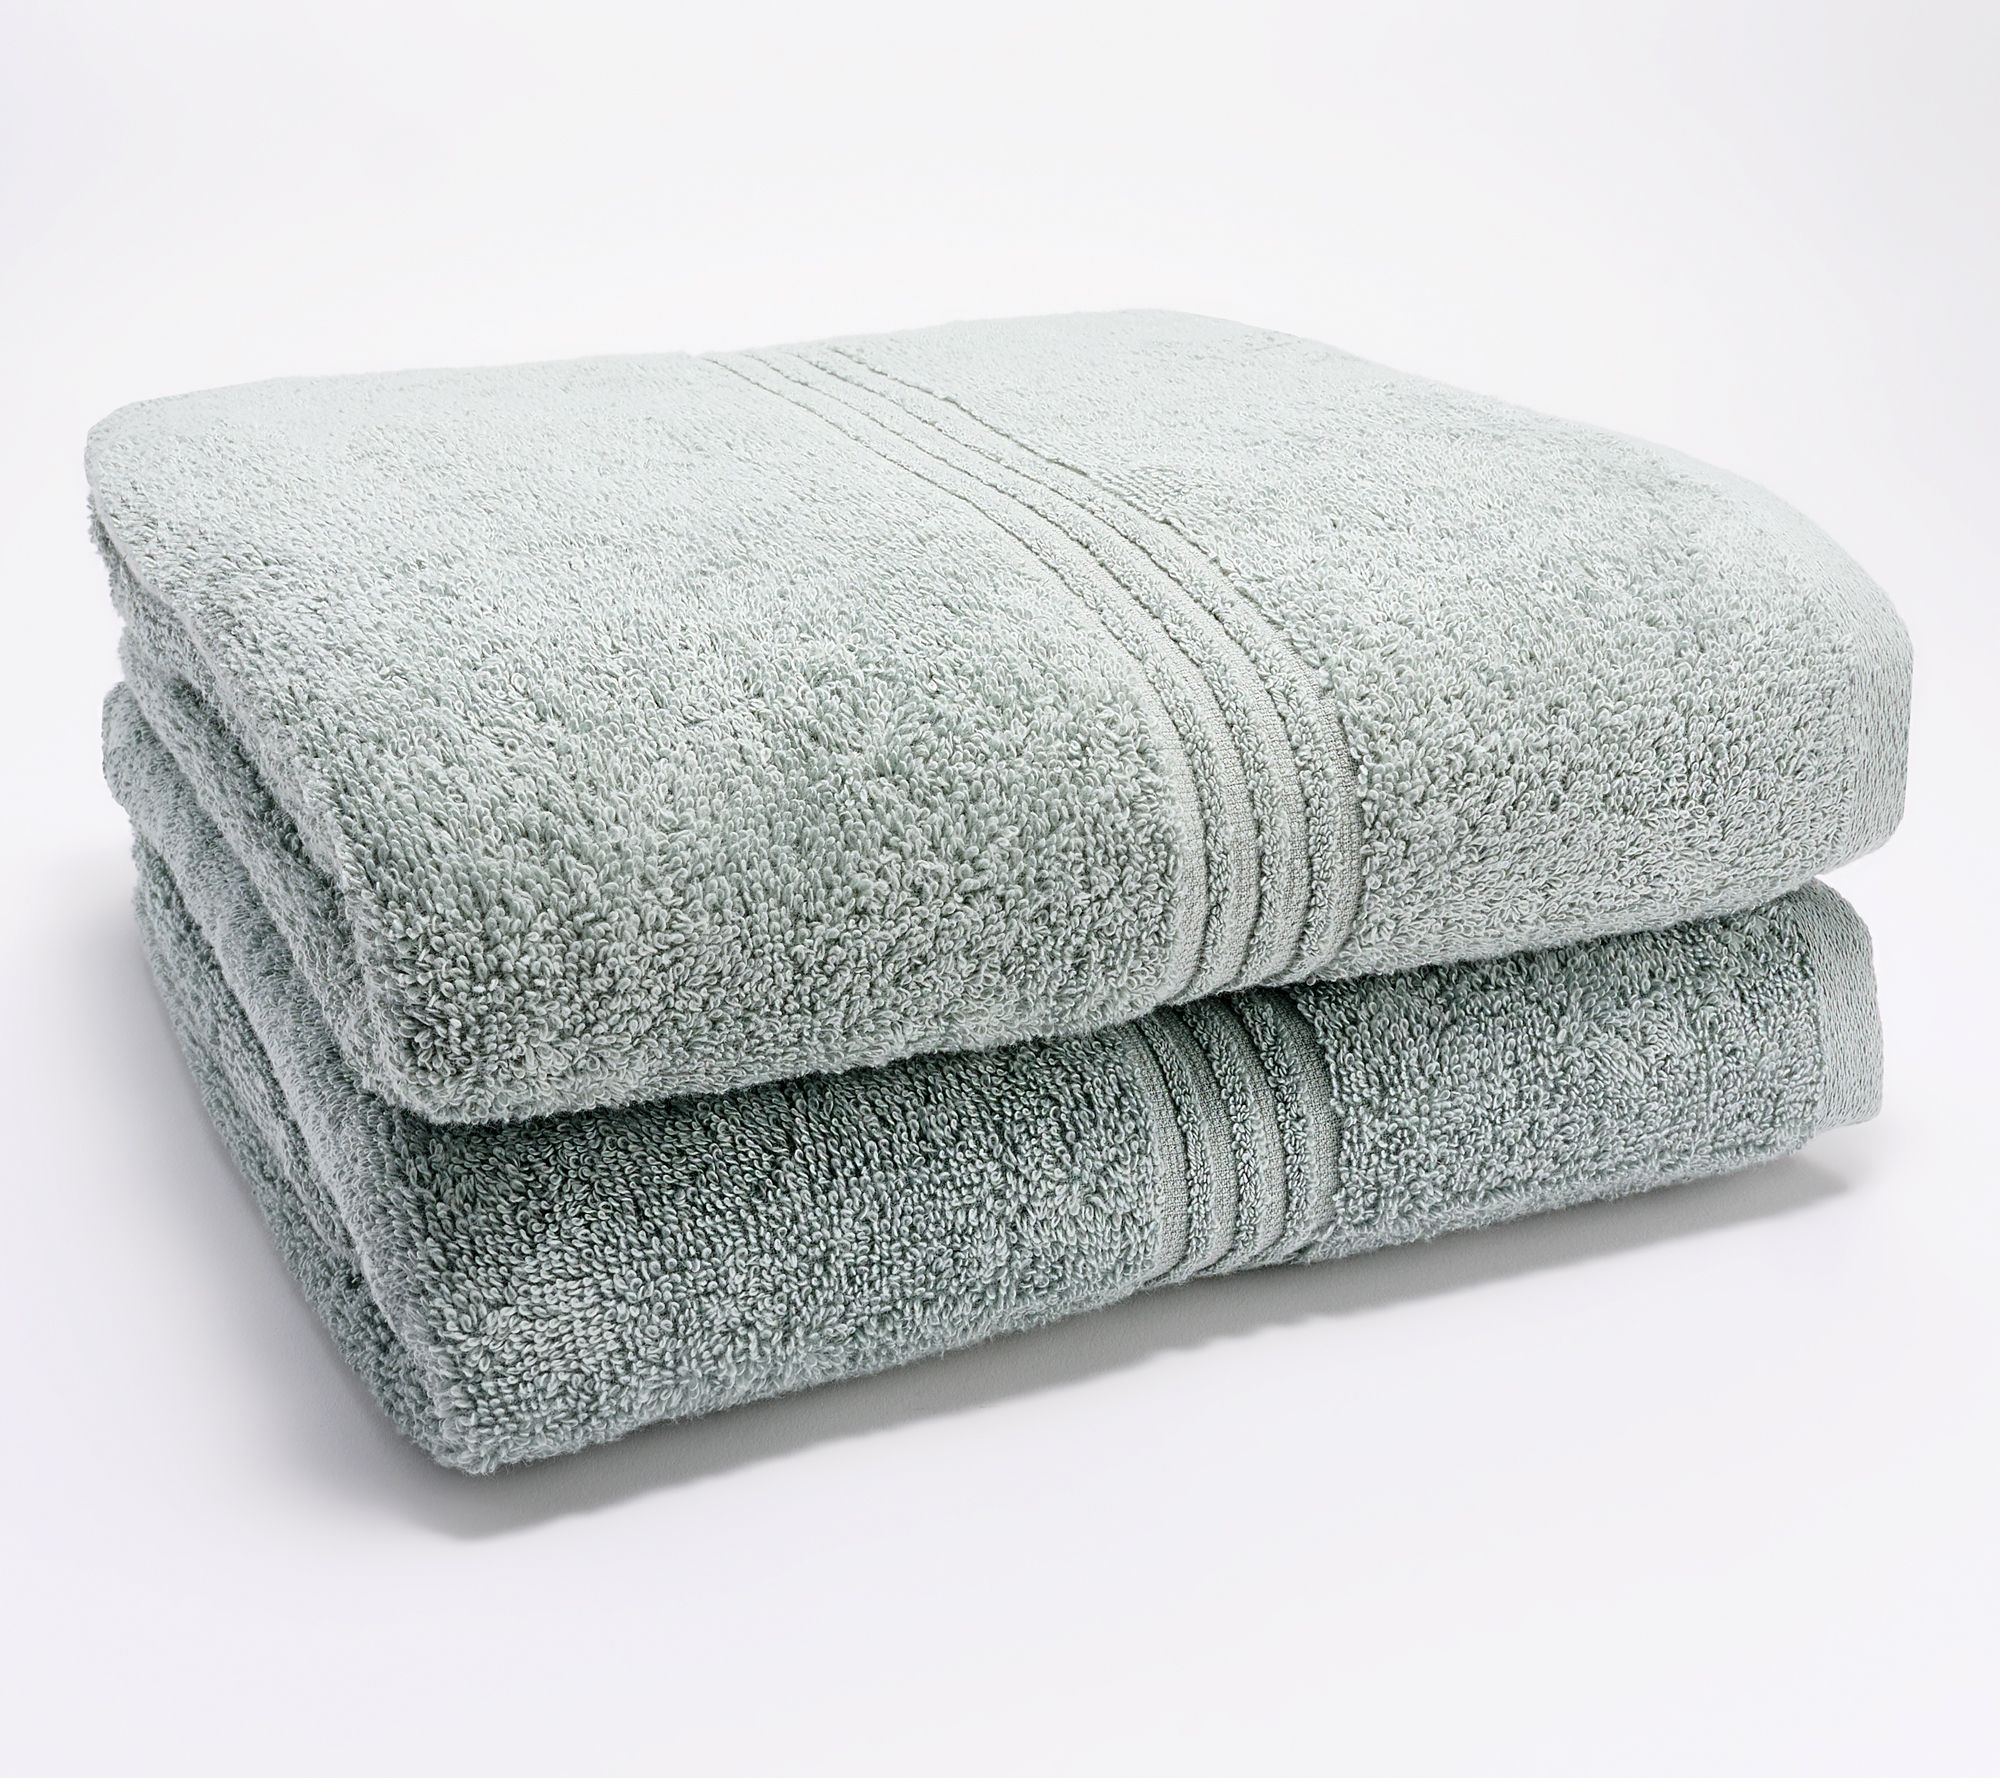 LANE LINEN 100% Cotton Bath Towels Set of 10, 2 Large Bath